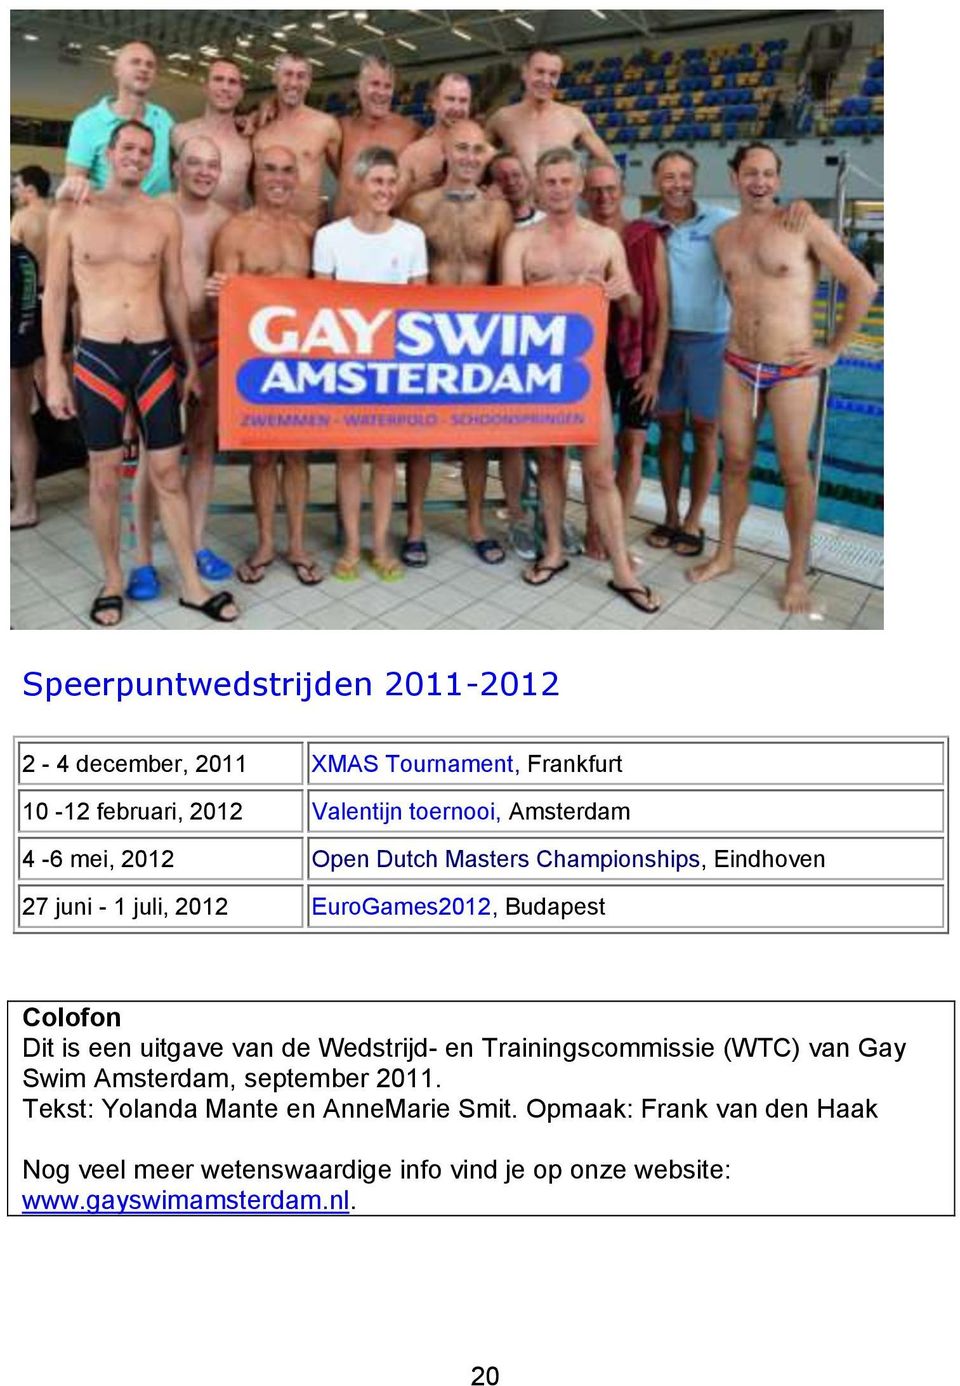 Dit is een uitgave van de Wedstrijd- en Trainingscommissie (WTC) van Gay Swim Amsterdam, september 2011.